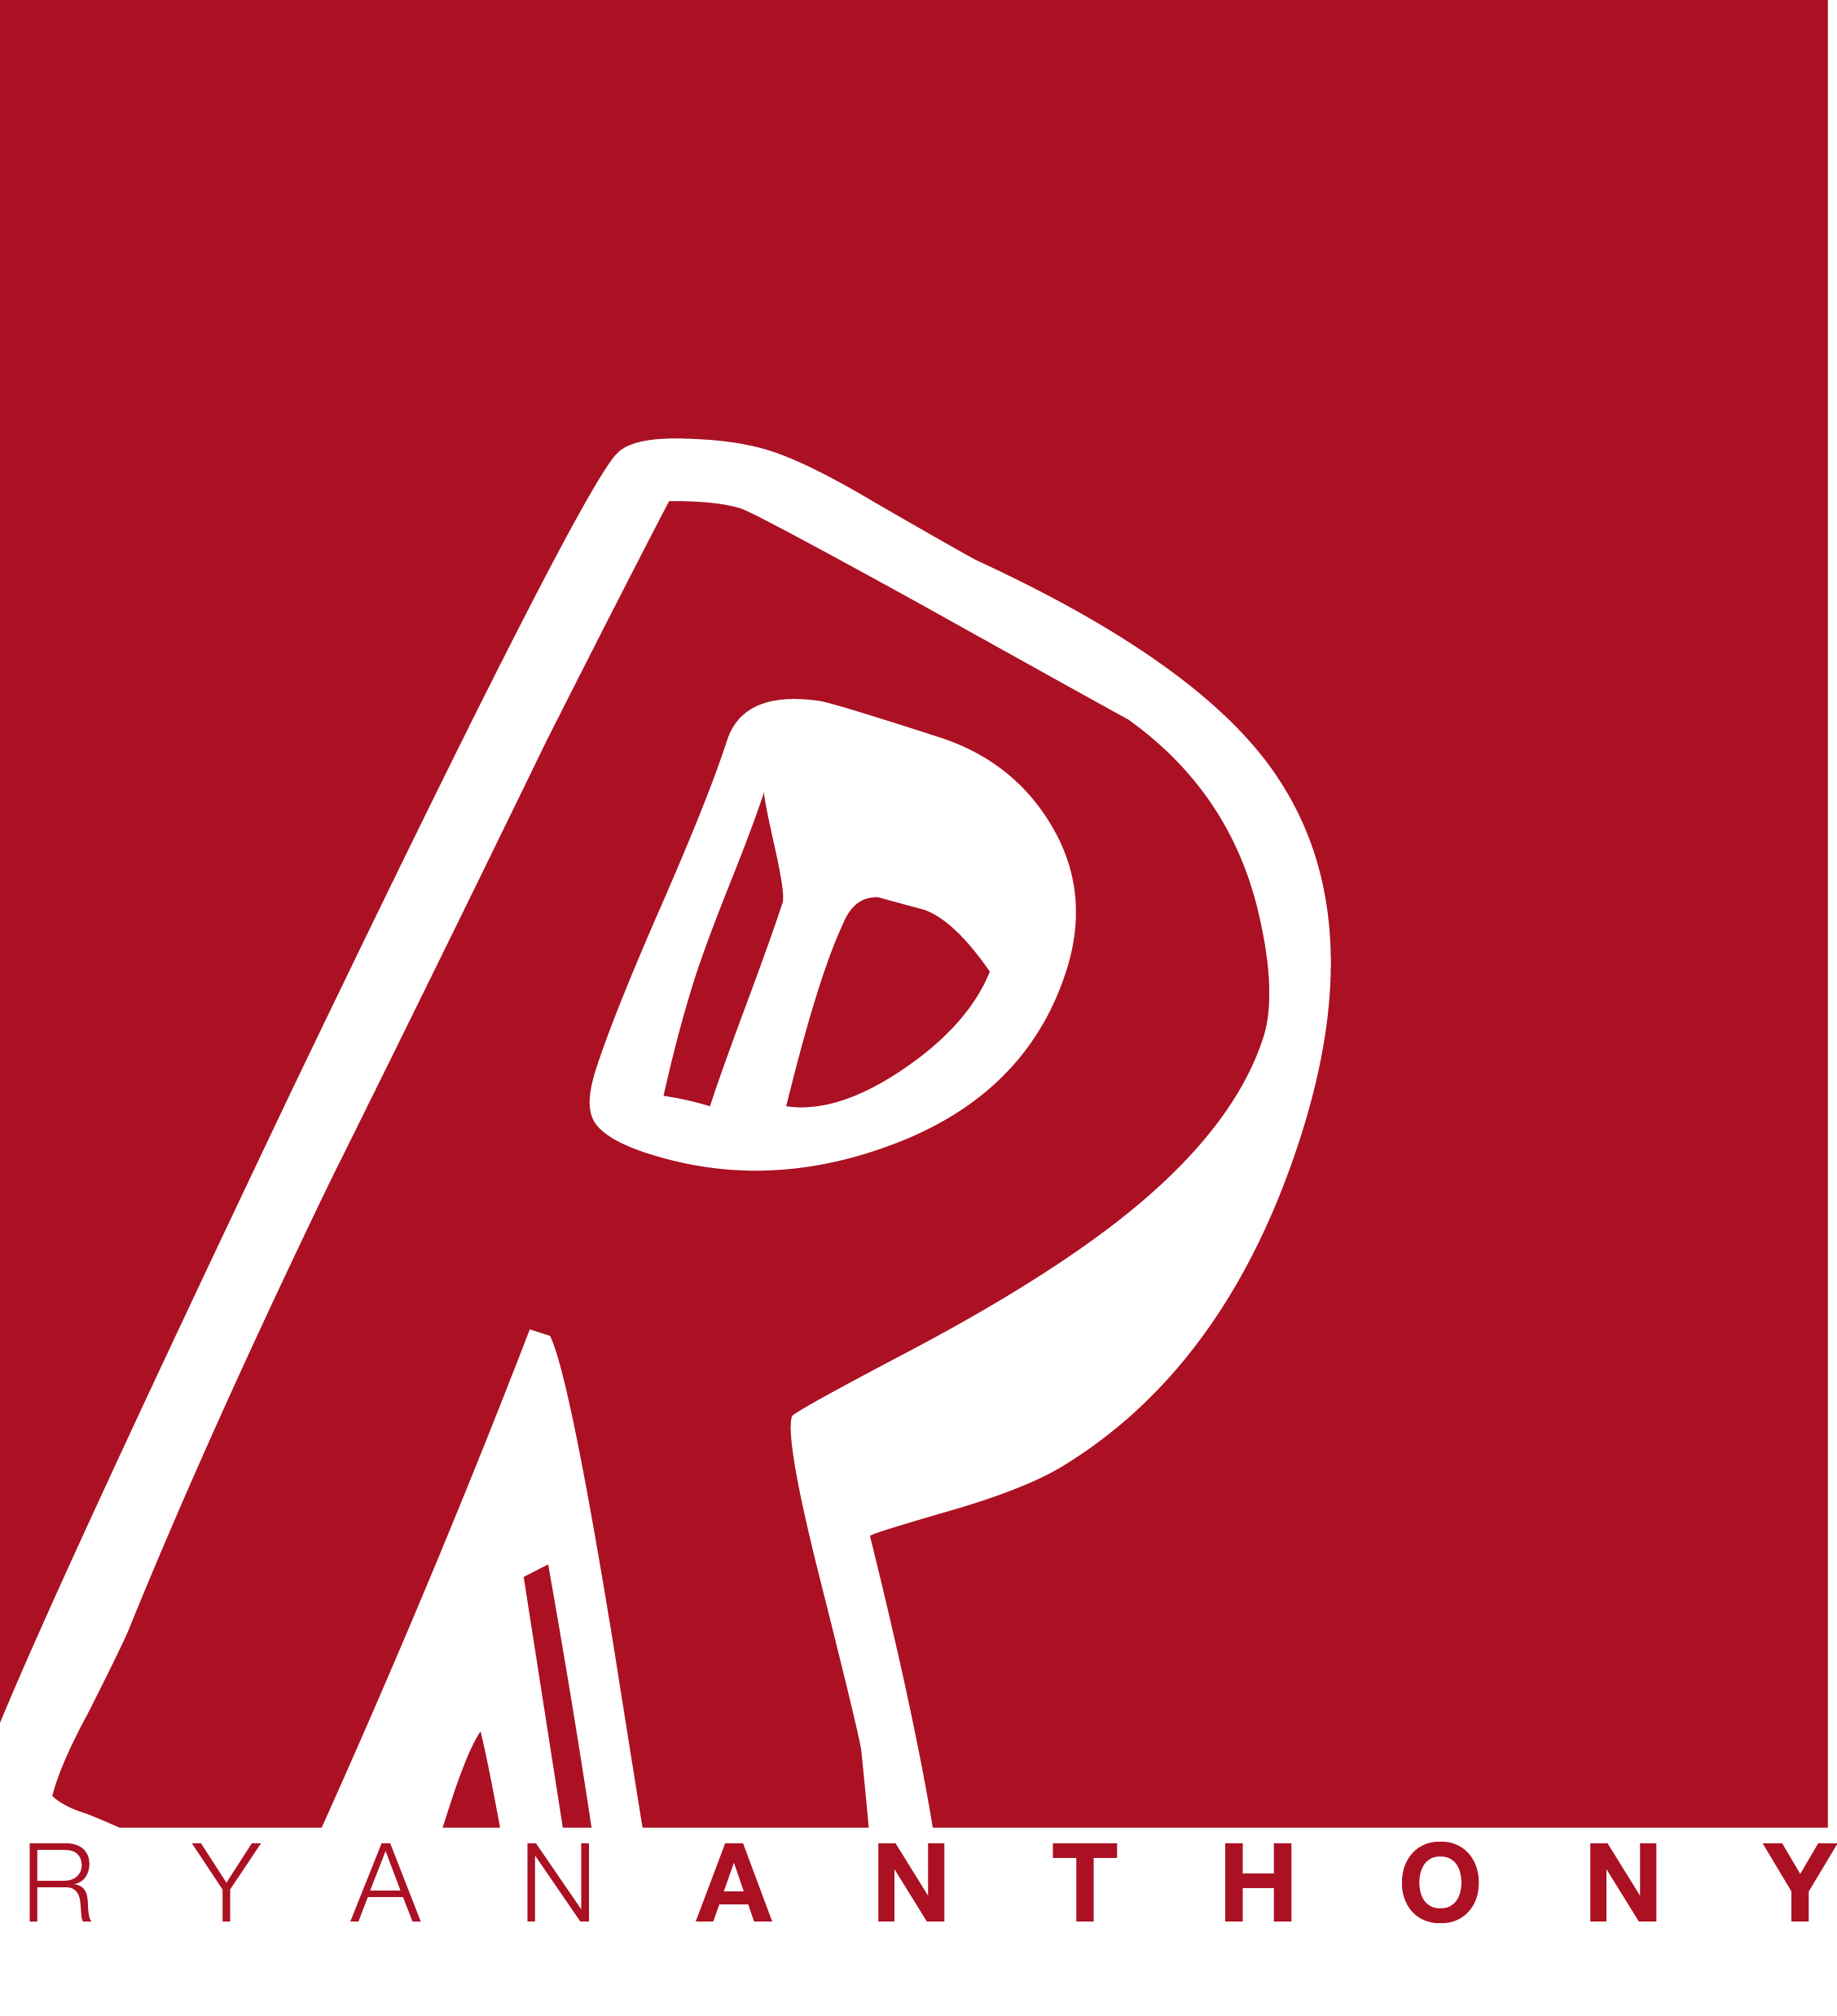 Ryan Anthony's Anthony Digital Media